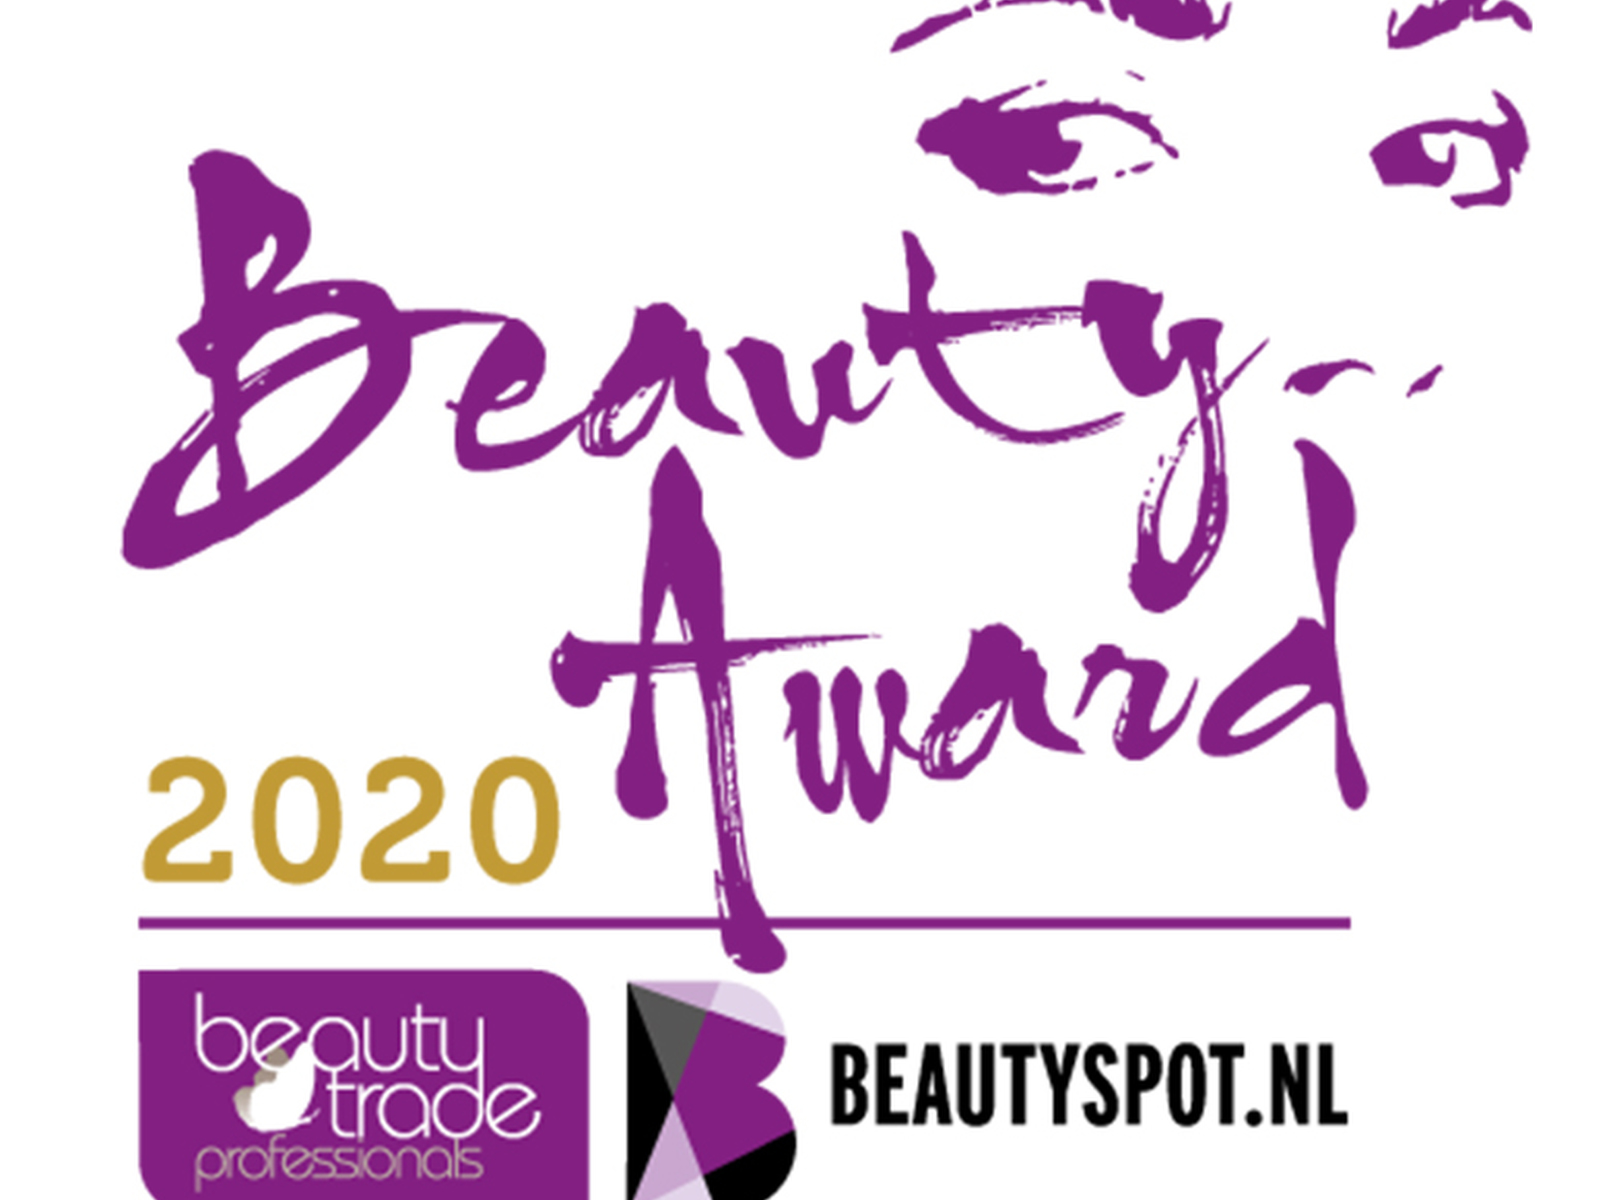 Beauty Award 2020 pas dit najaar uitgereikt • Nieuws De Beautysalon